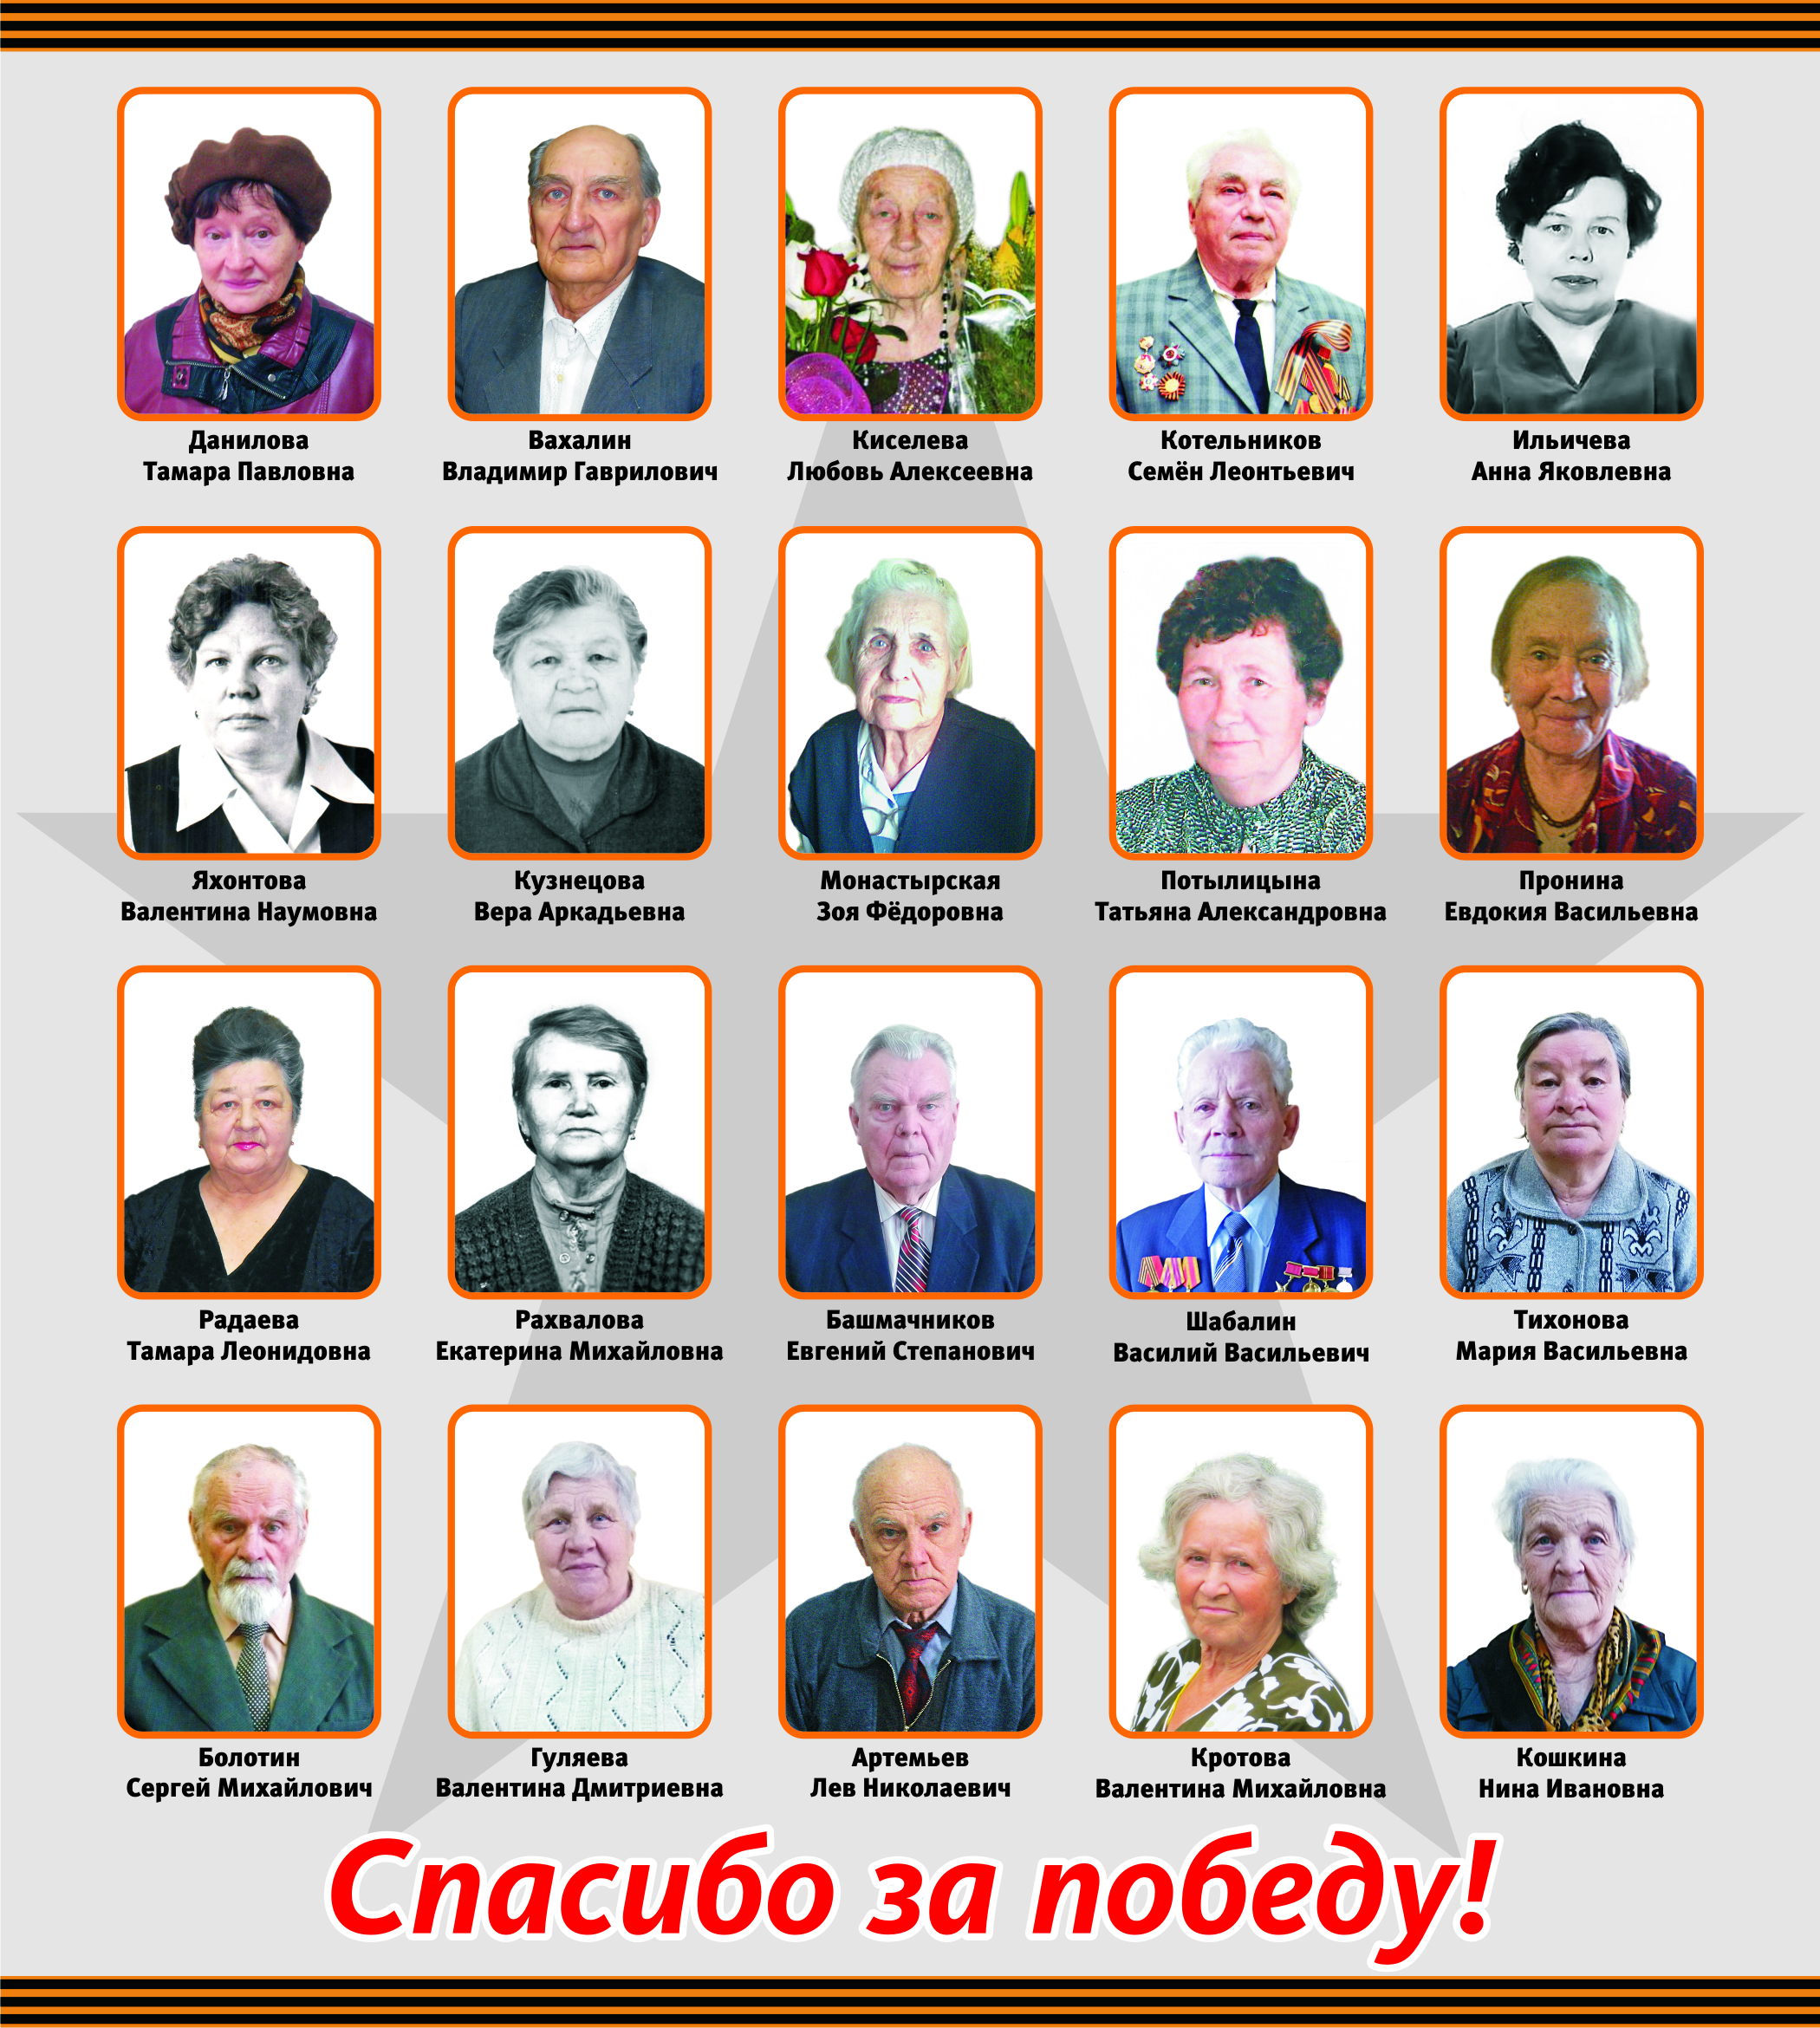 Пайщики Нижегородского кредитного союза